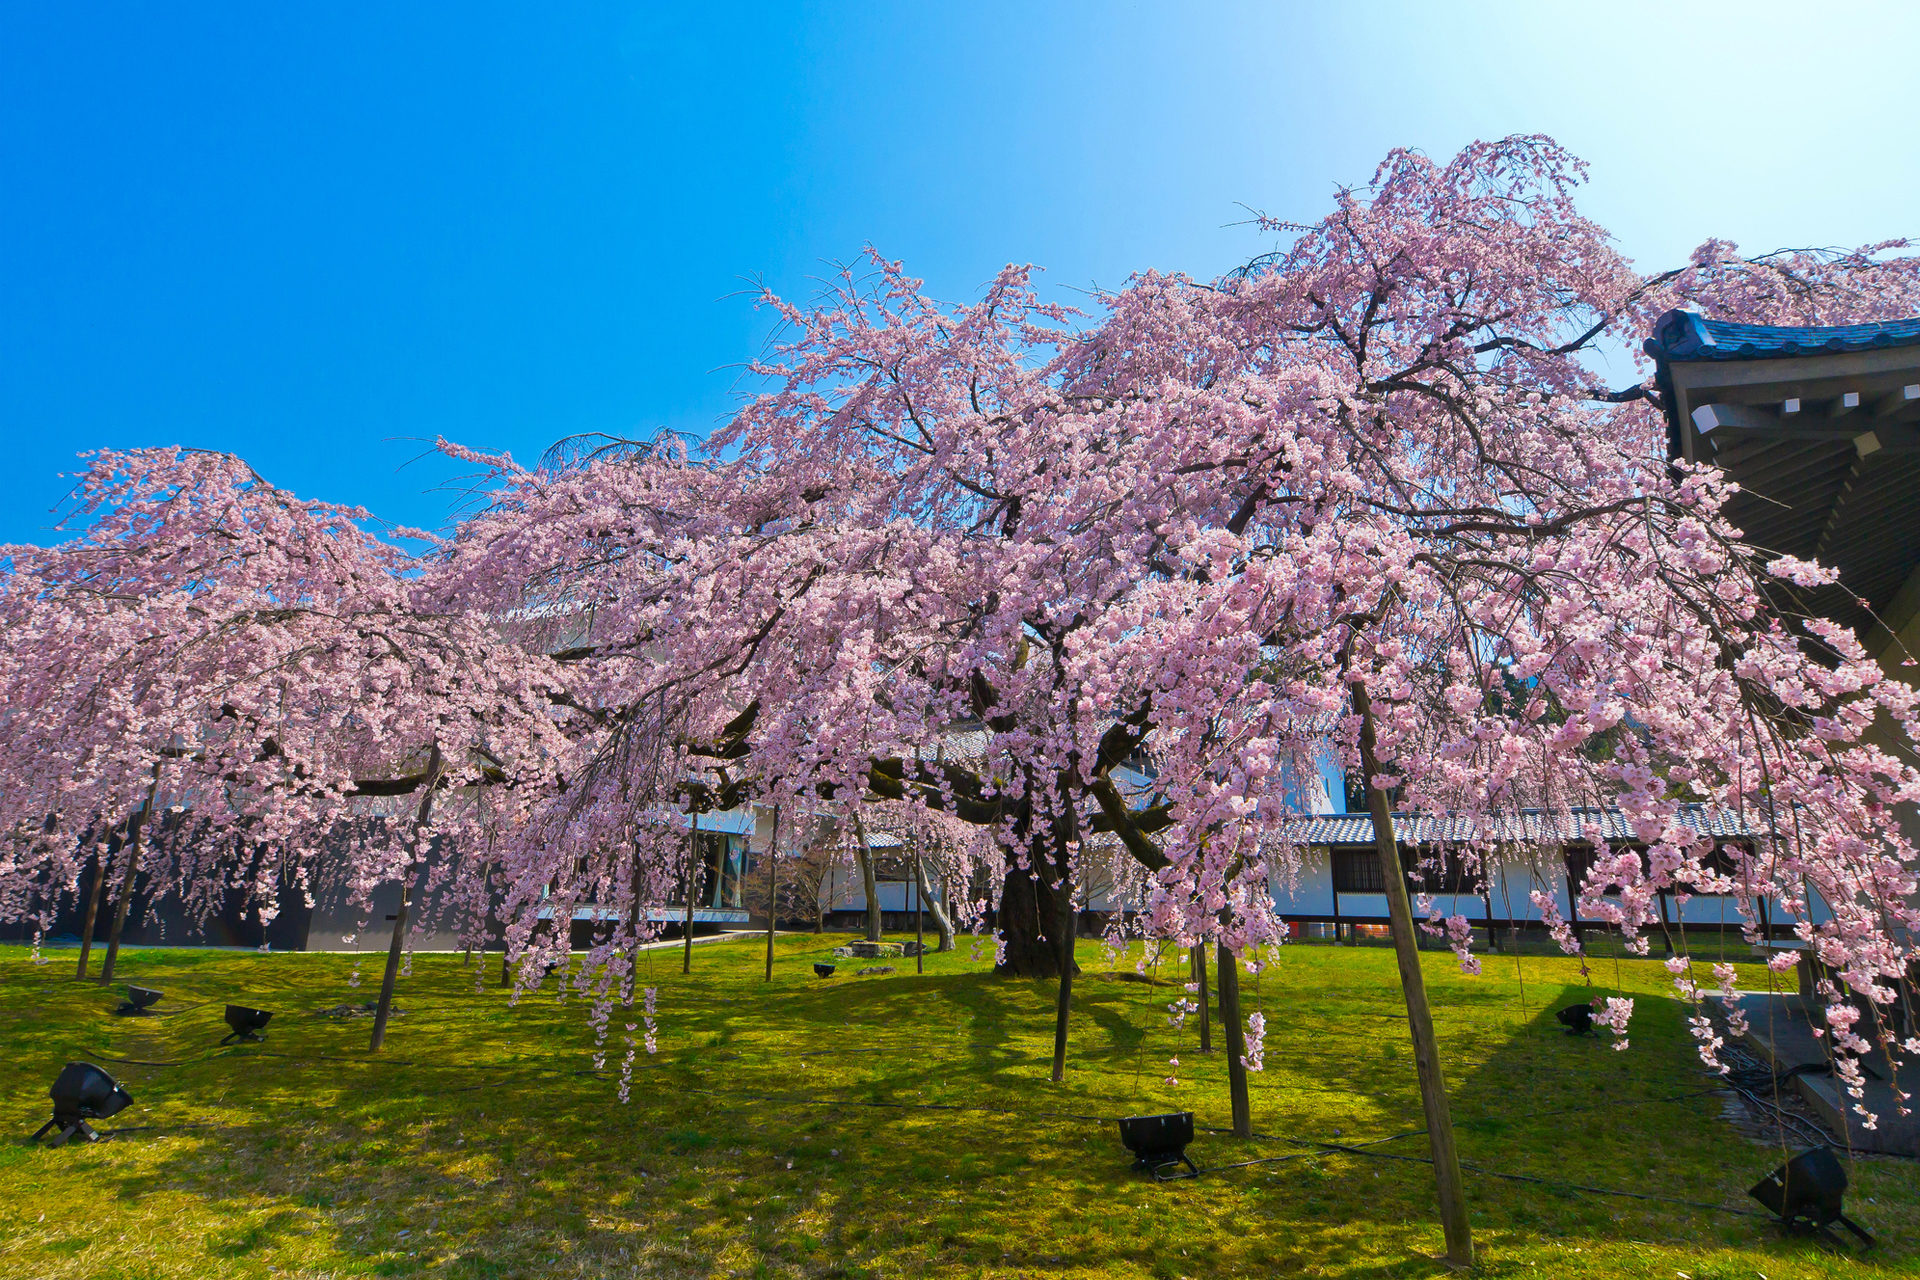 21年 1番綺麗な京都の桜のスポットは Caedekyoto カエデ京都 紅葉と伝統美を引き継ぐバッグ